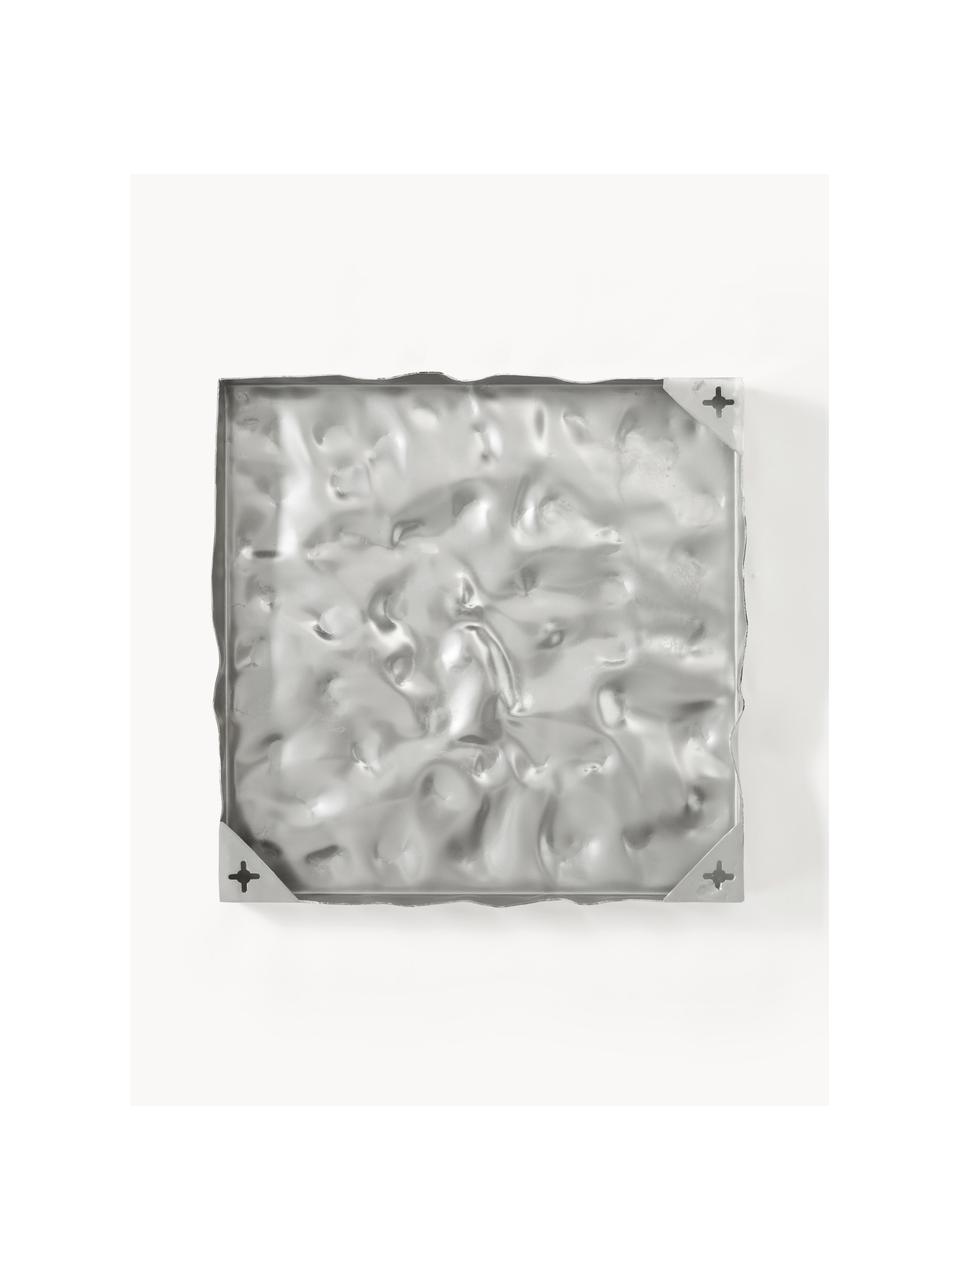 Dekoracja ścienna Splash, 2 szt., Aluminium polerowane i lakierowane, Odcienie srebrnego, S 50 x W 50 cm